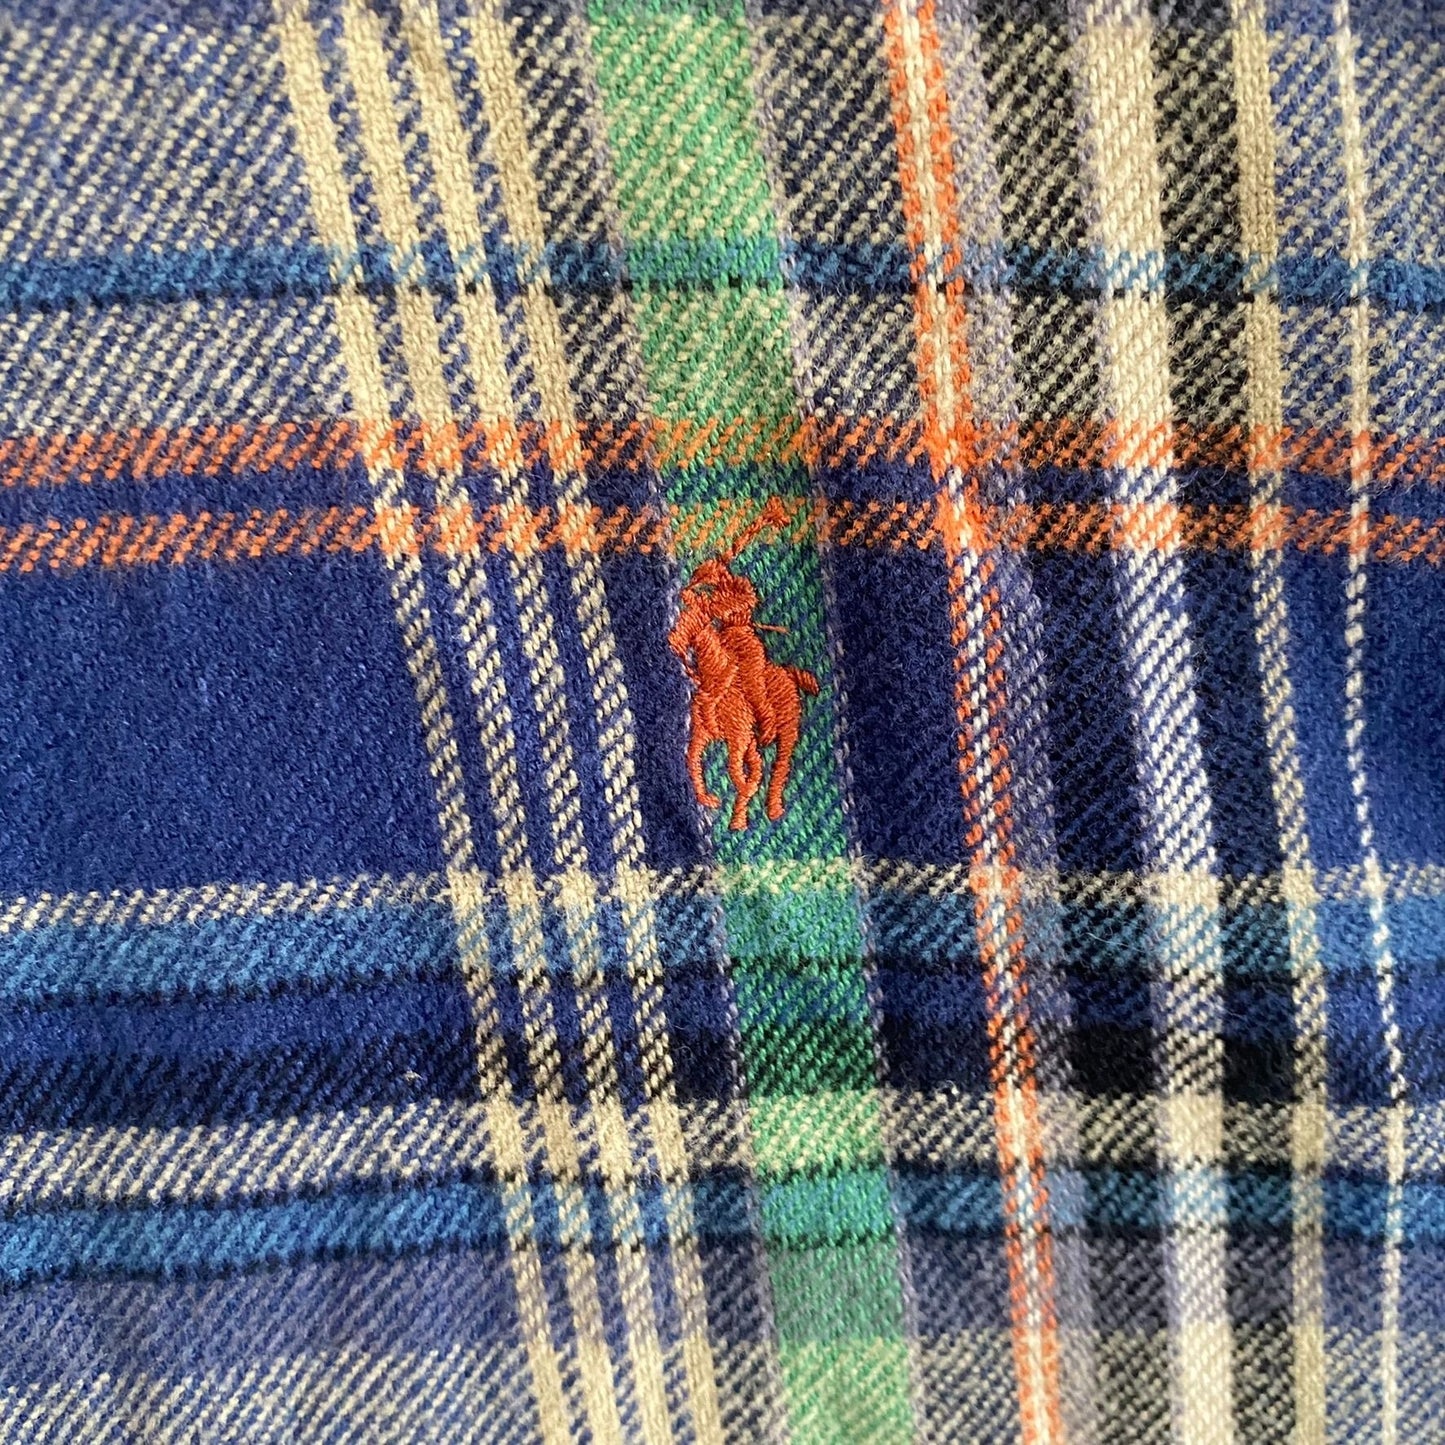 Ralph Lauren Plaid Flannel Shirt